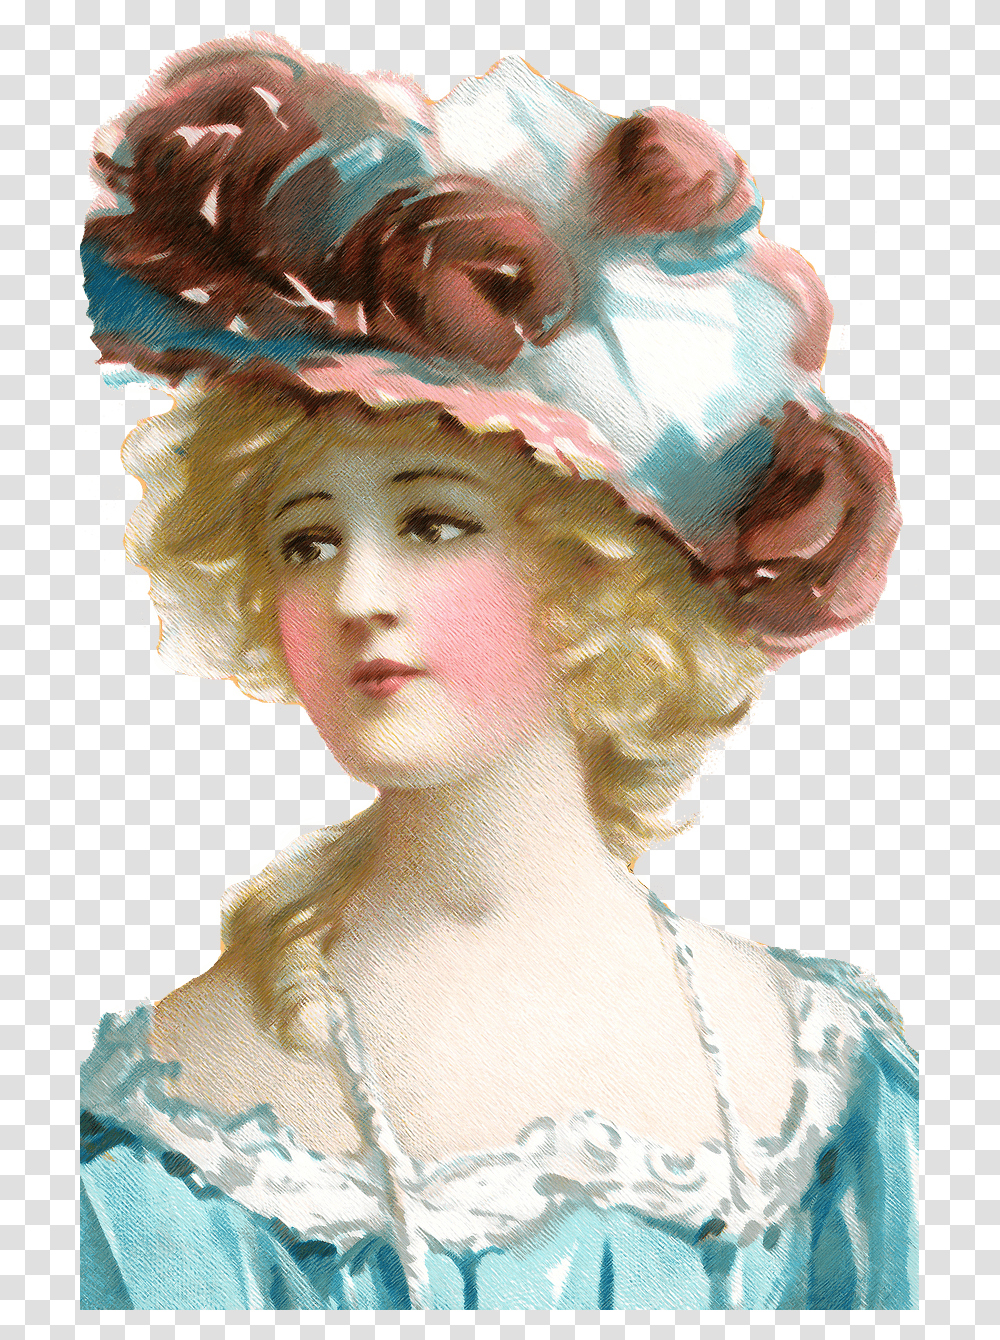 Mujer Con Flores En Cabeza Dibujo De Epoca Dama Vintage, Apparel, Person, Human Transparent Png